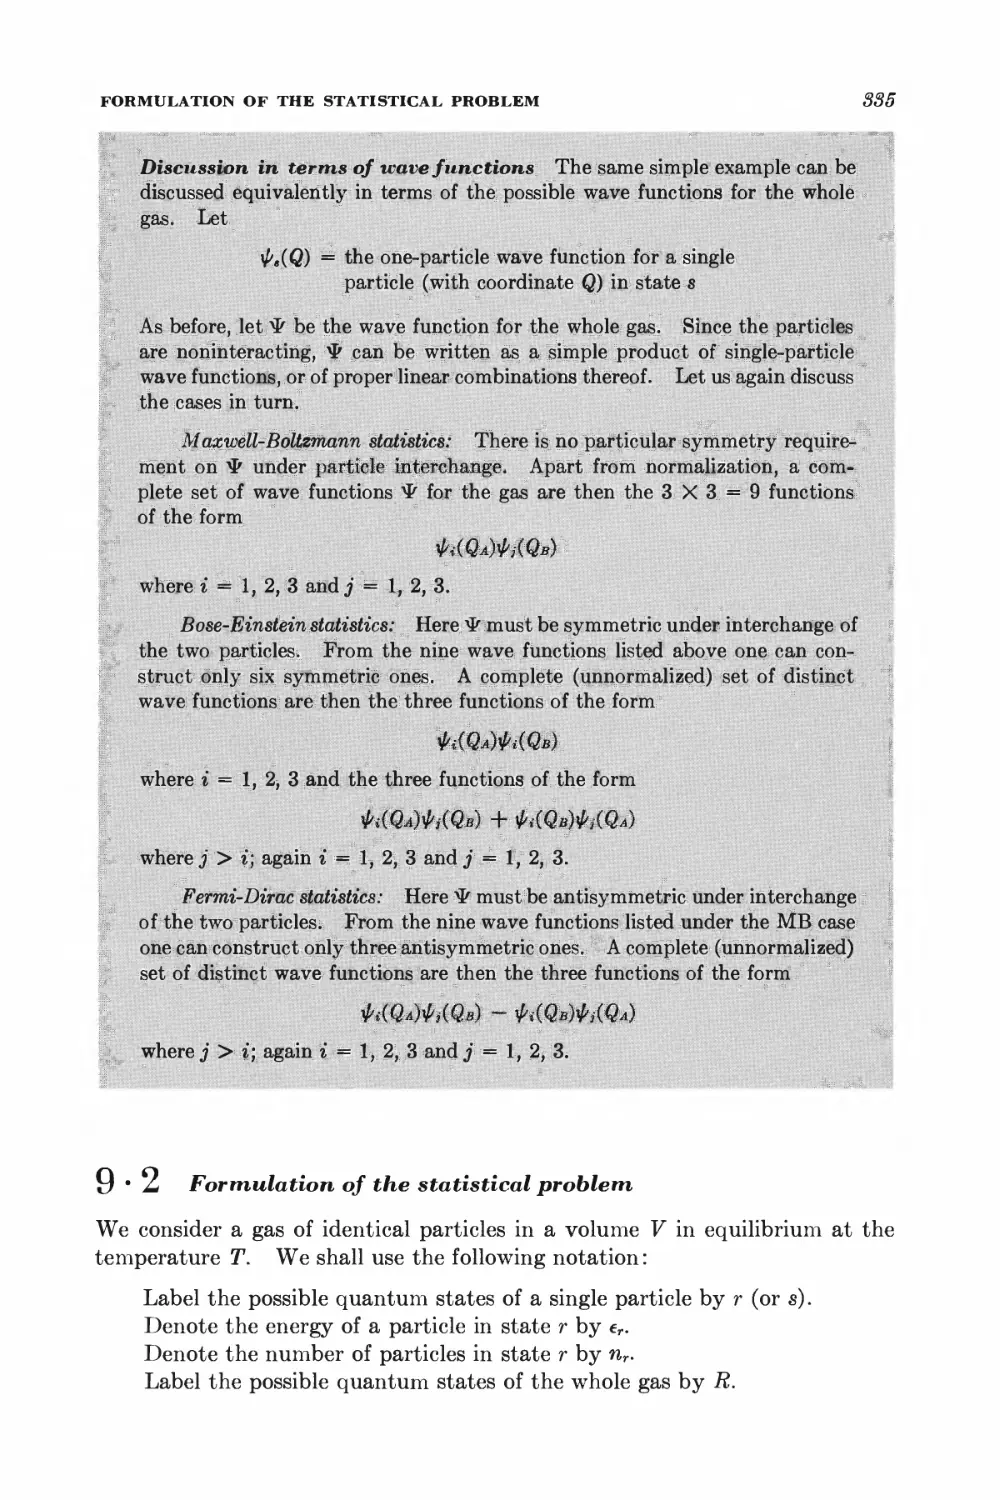 9.2 Formulation of the statistical problem